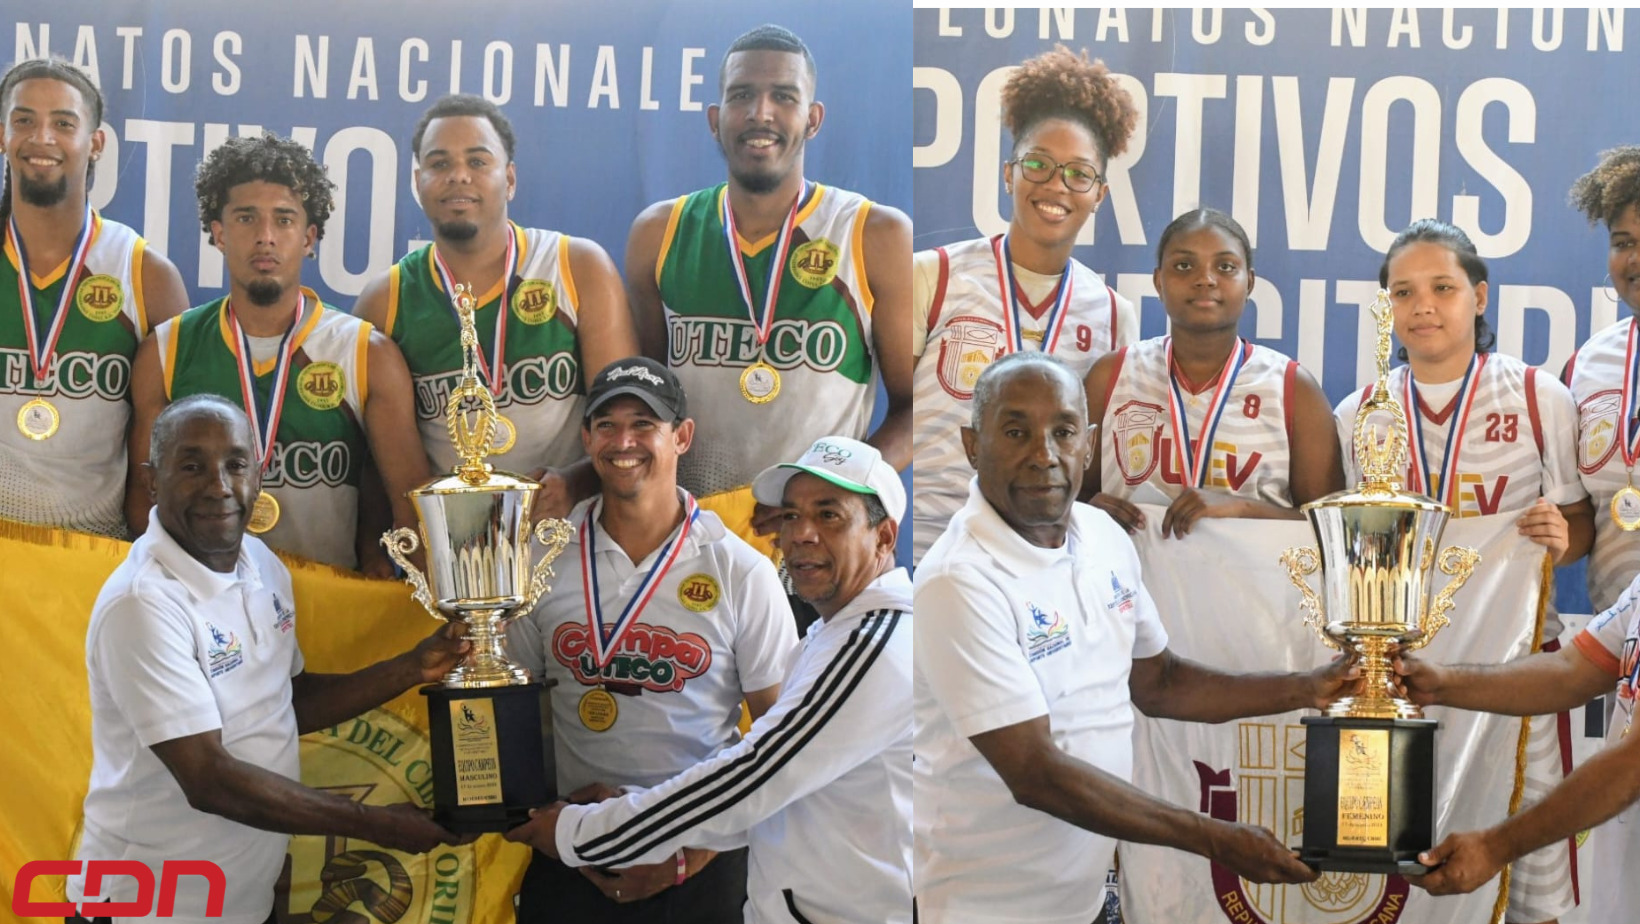 Uteco y Unev se imponen durante celebración del Campeonato Nacional de Baloncesto Universitario 3x3